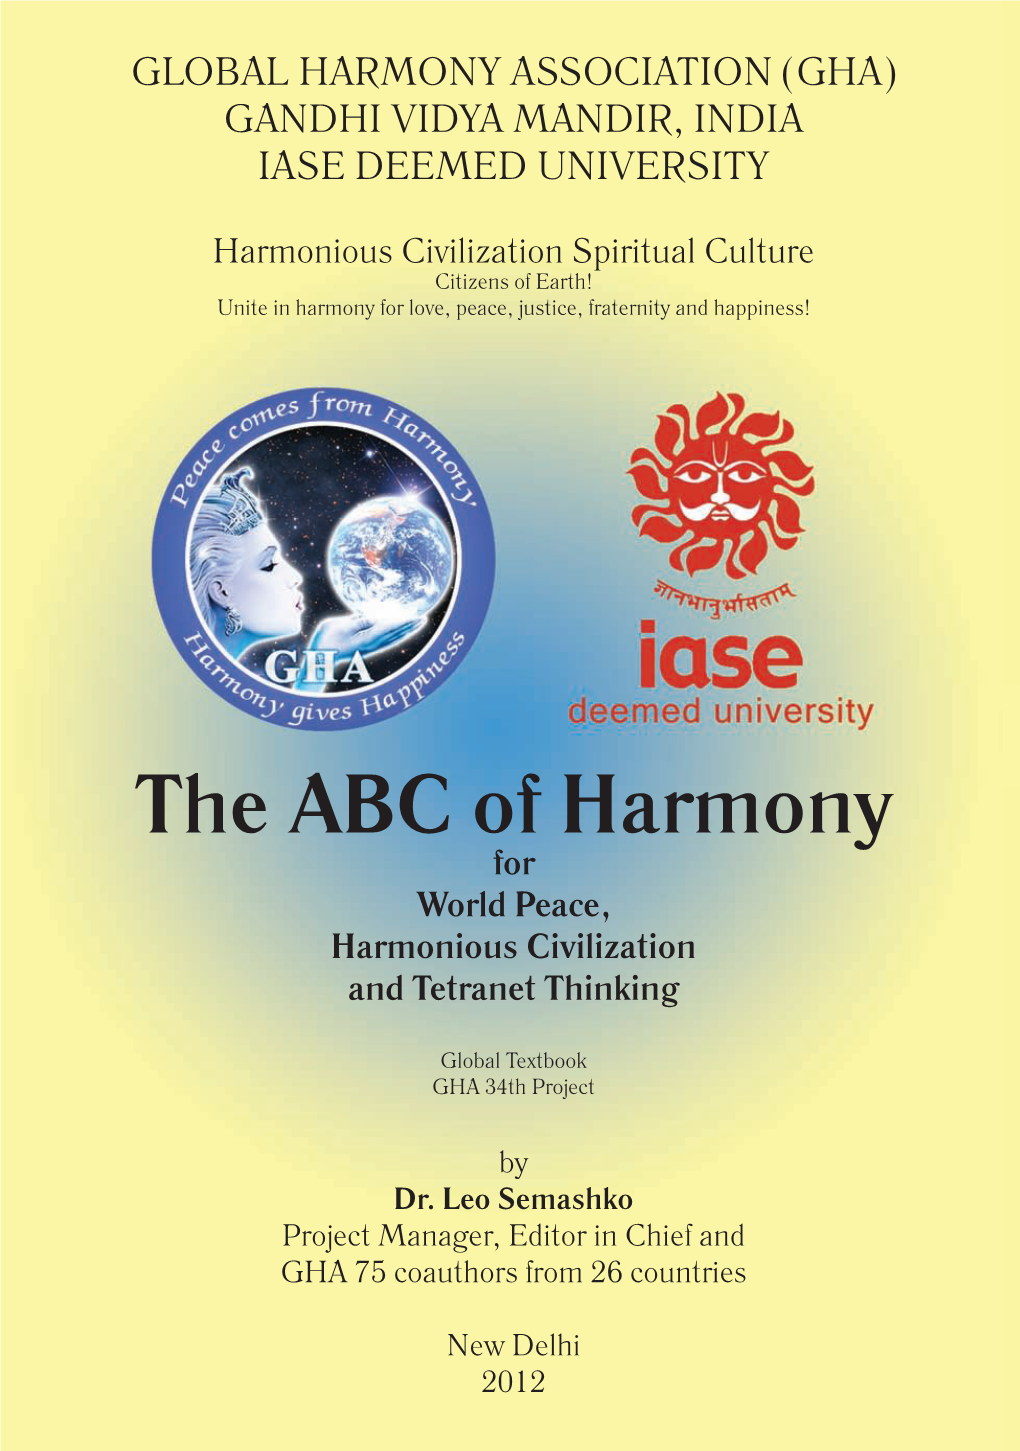 The ABC of Harmony for World Peace, Harmonious Civilization and Tetranet Thinking